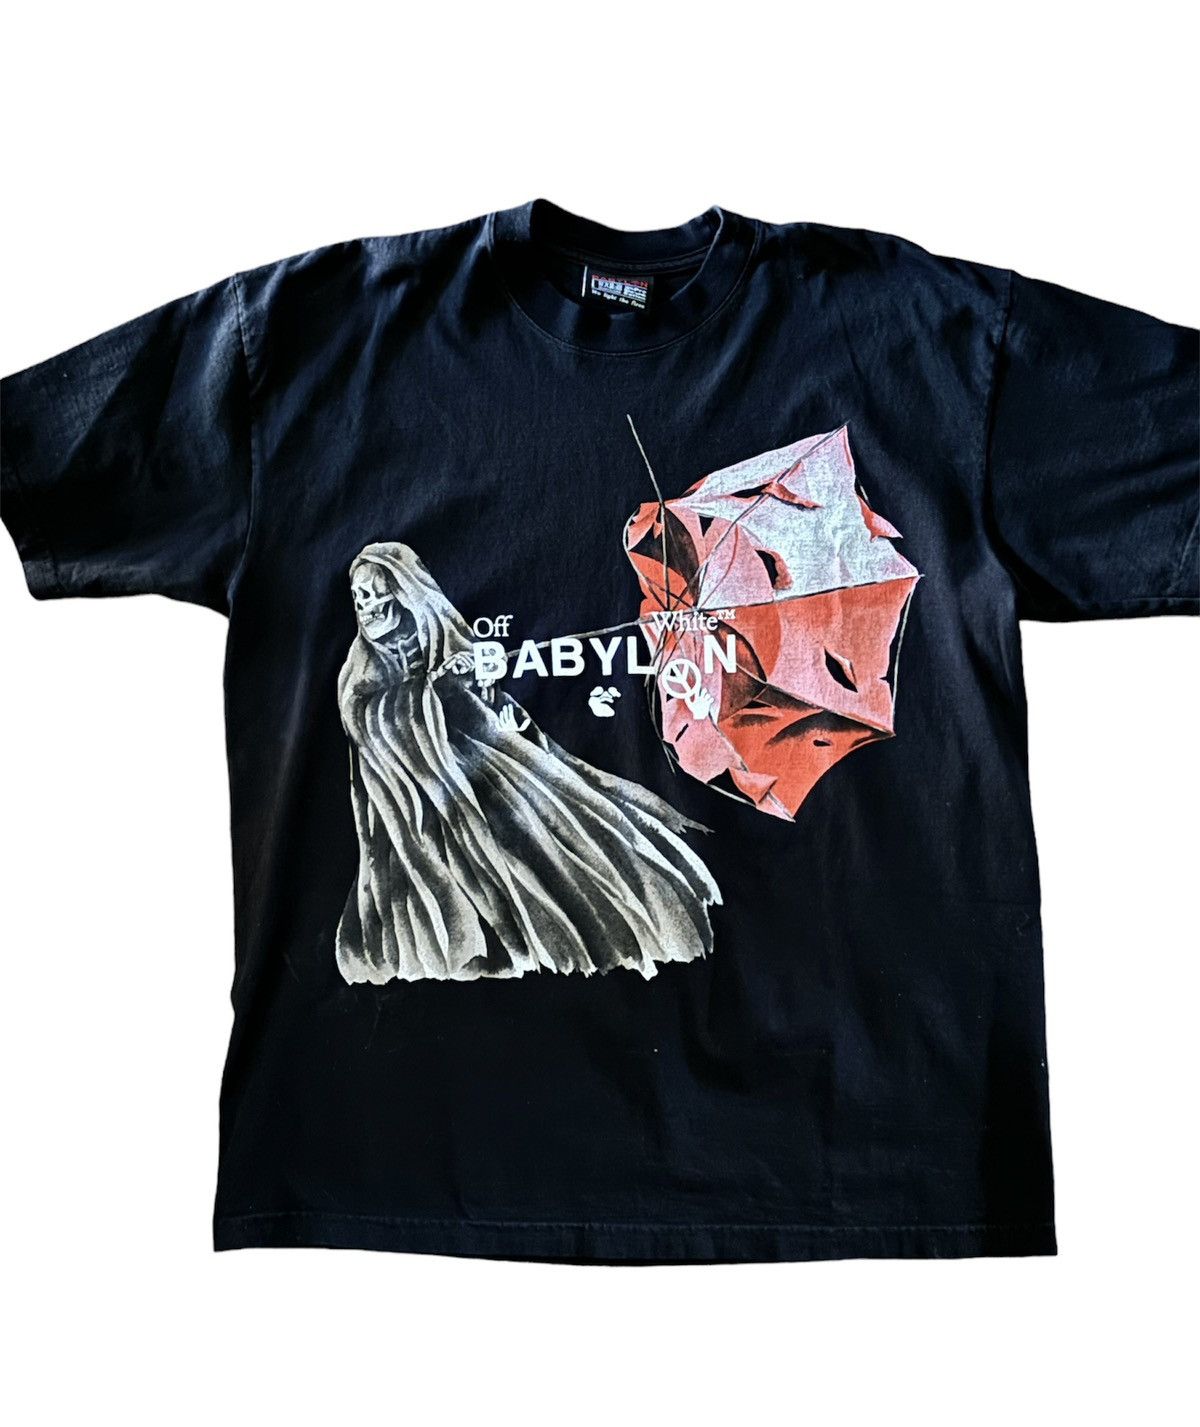 OFF-WHITE x Babylon Reaper T-shirt Black